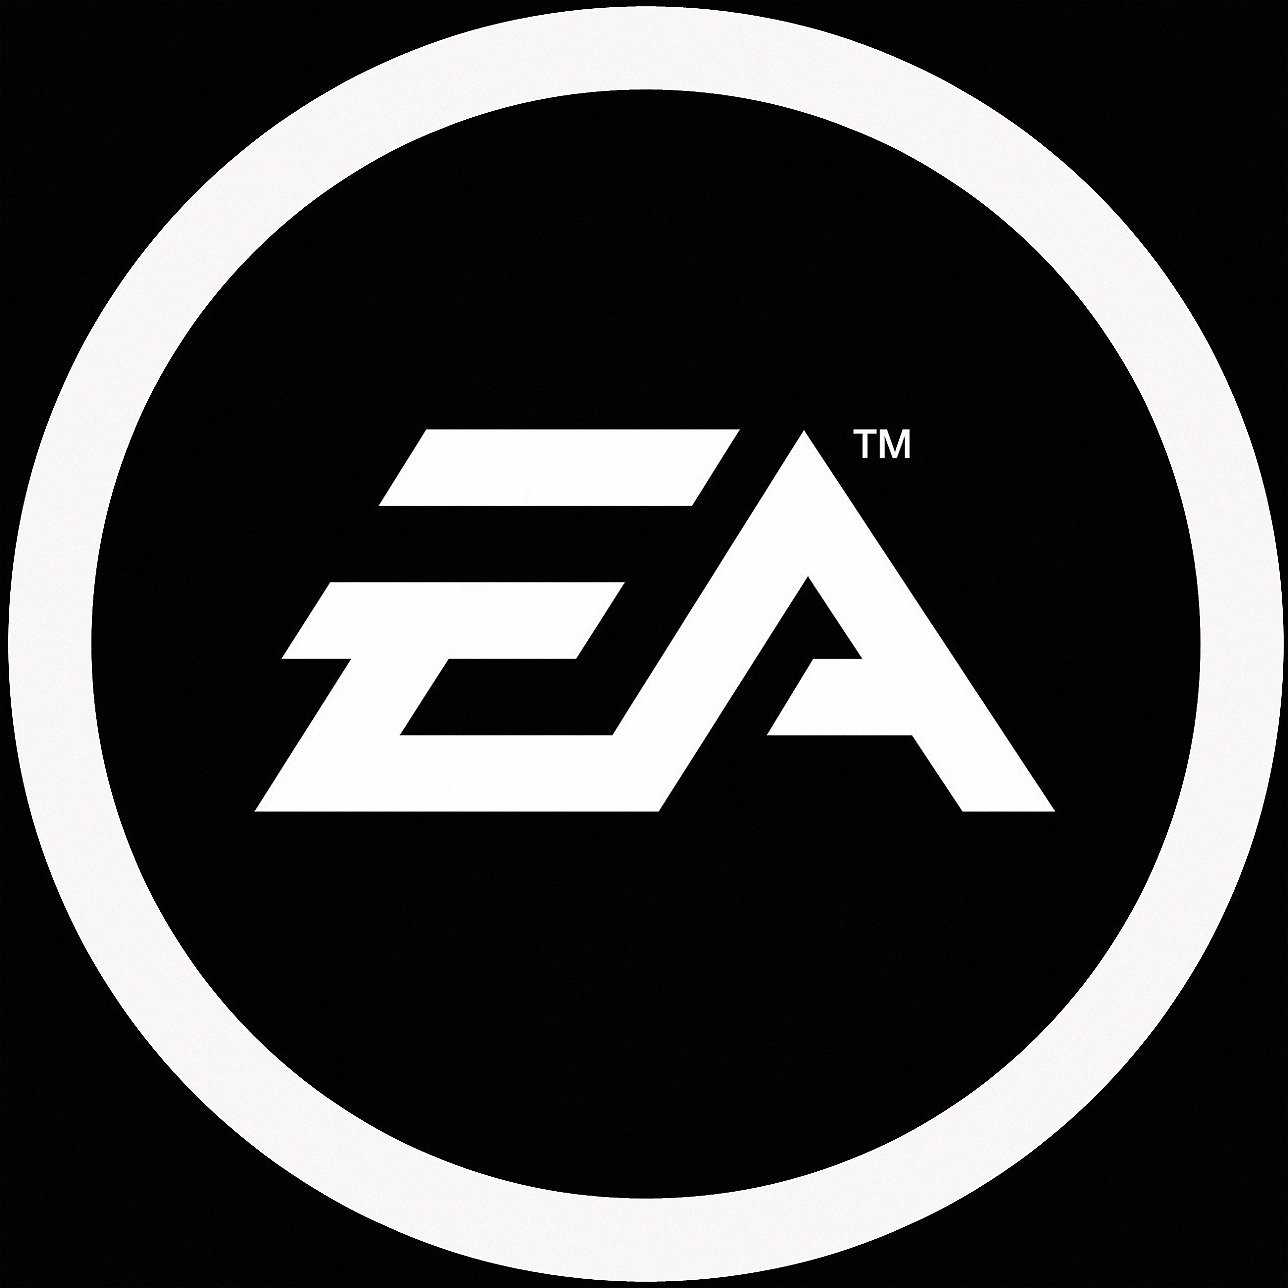  EA Logo Histoire Signification Et volution Symbole